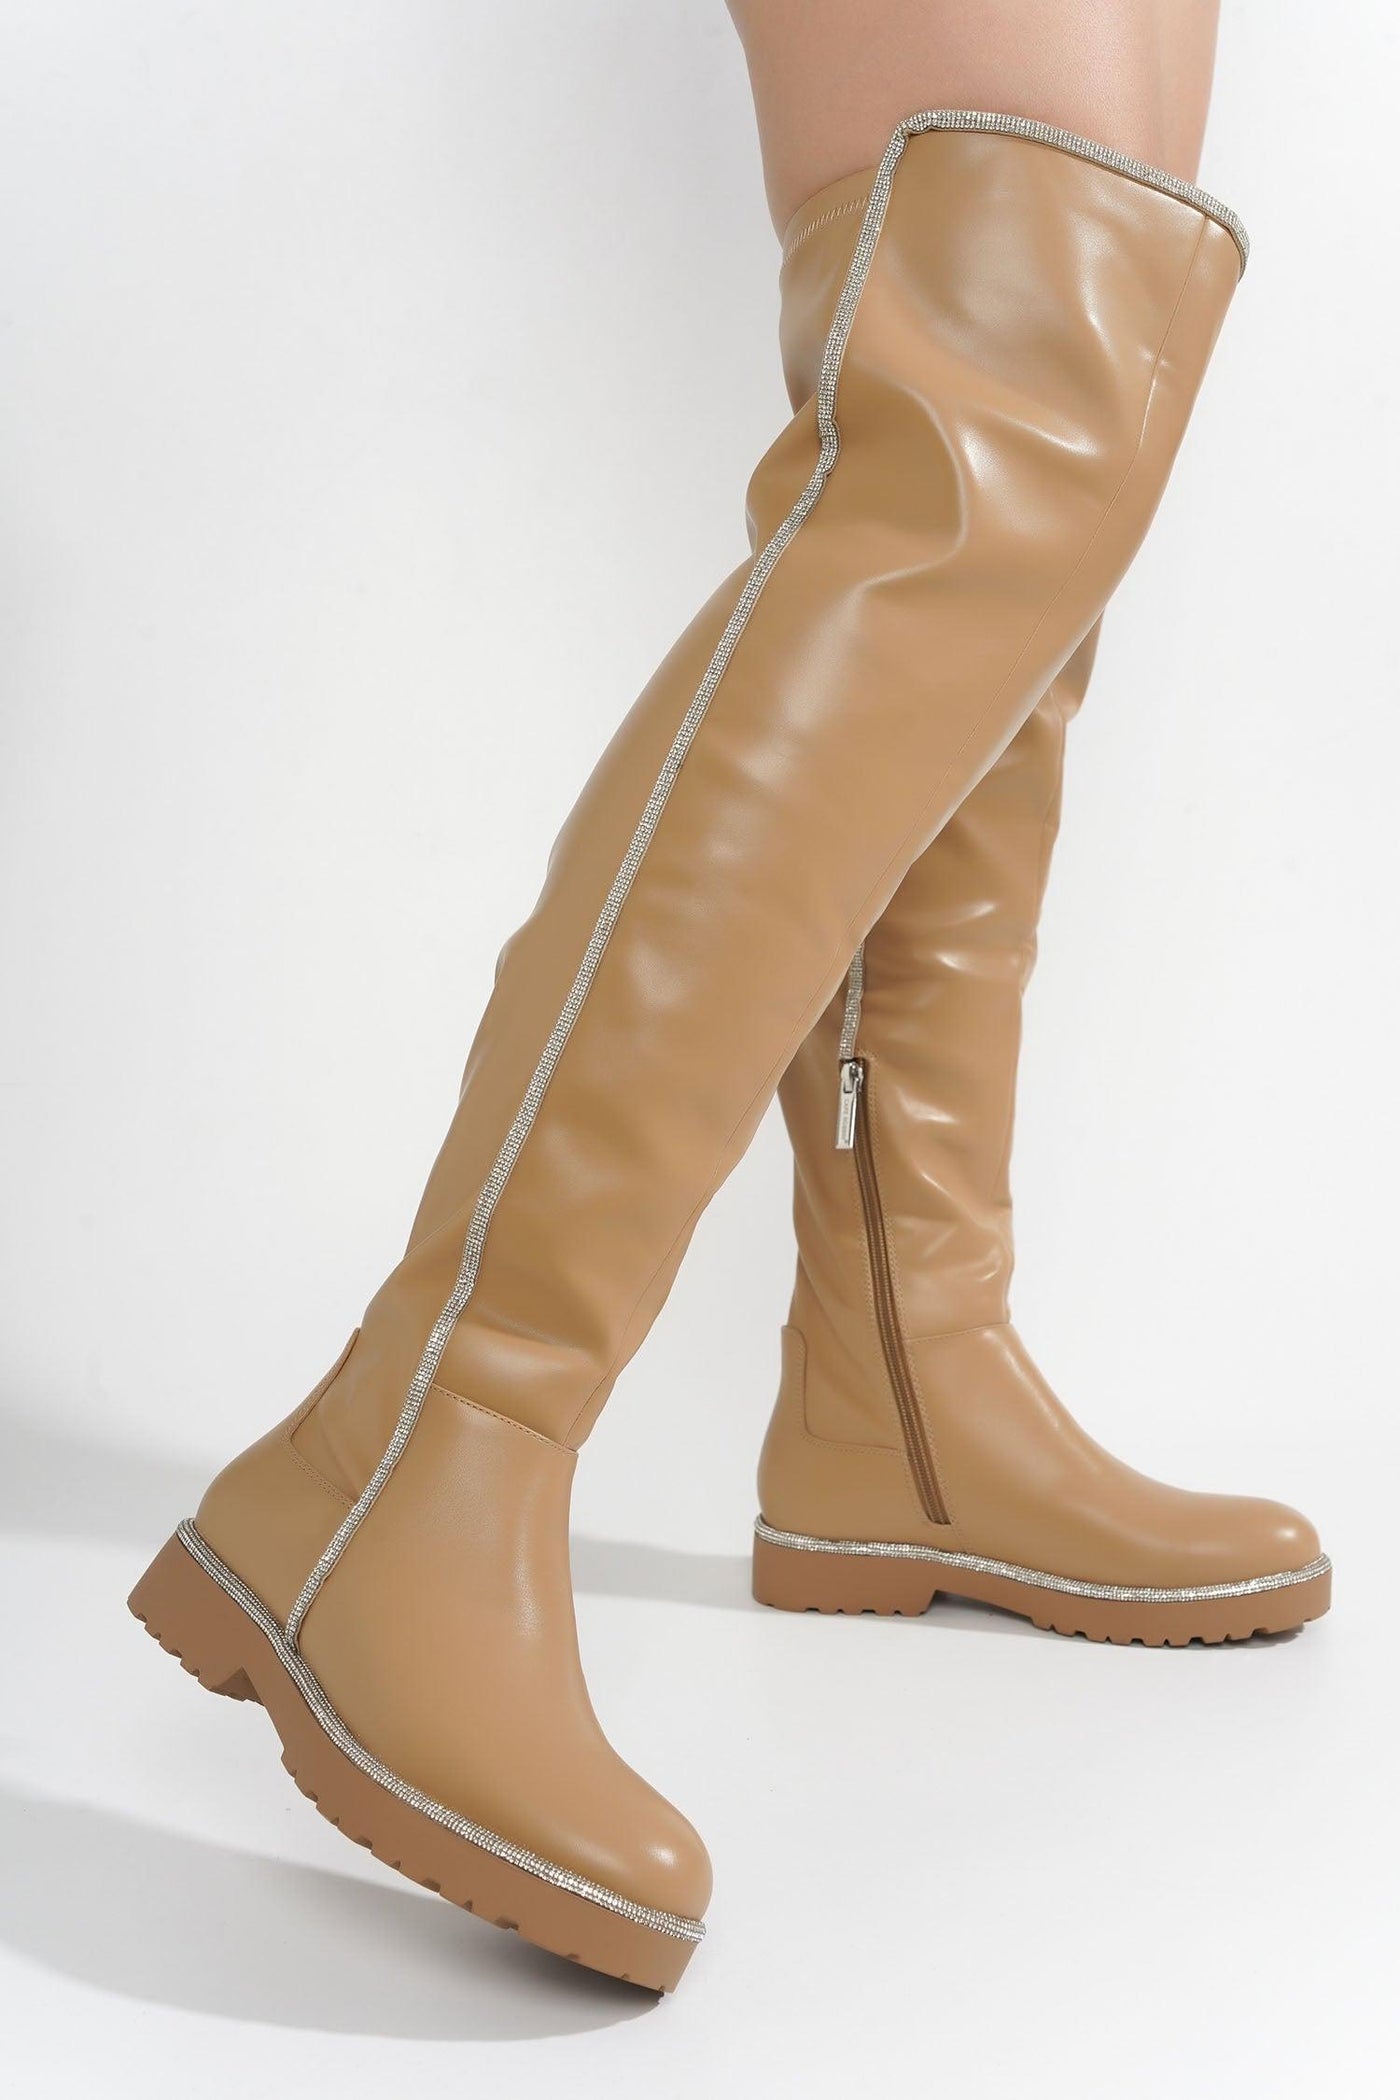 KURI - TAN Thigh High Boots - AMIClubwear